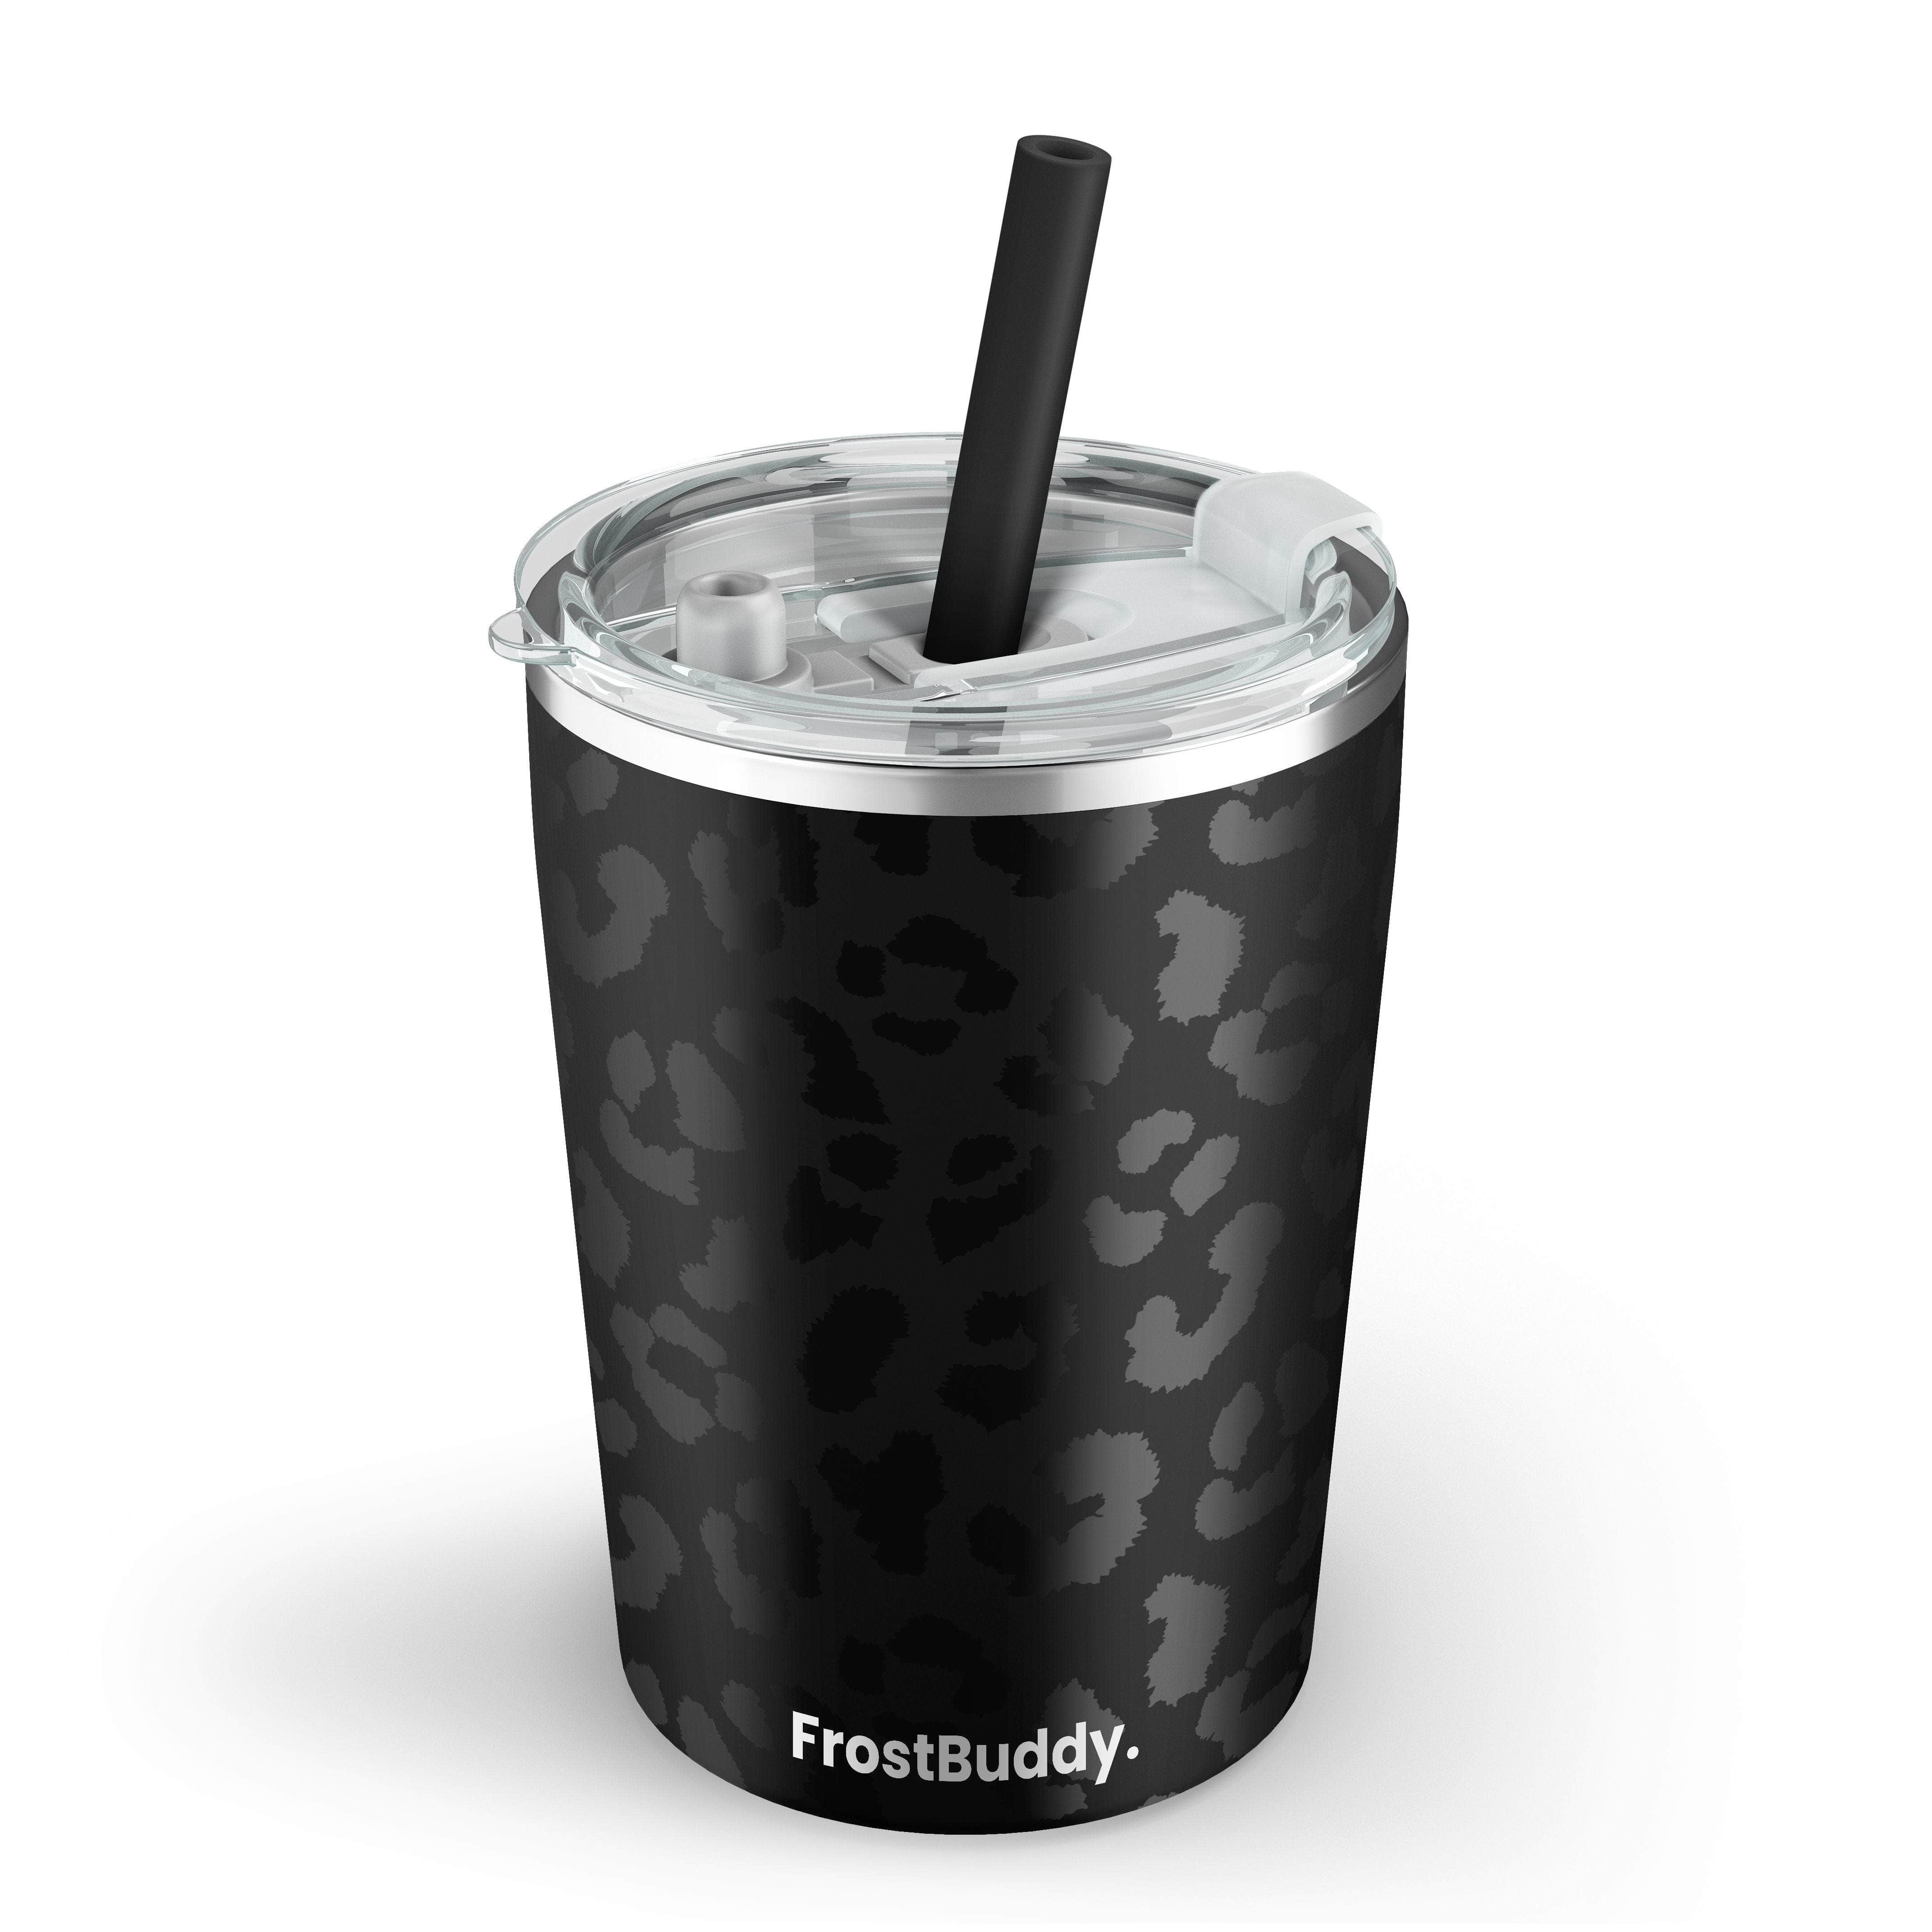 Adult Sippy Cup - Black Ceramic tumbler travel mug